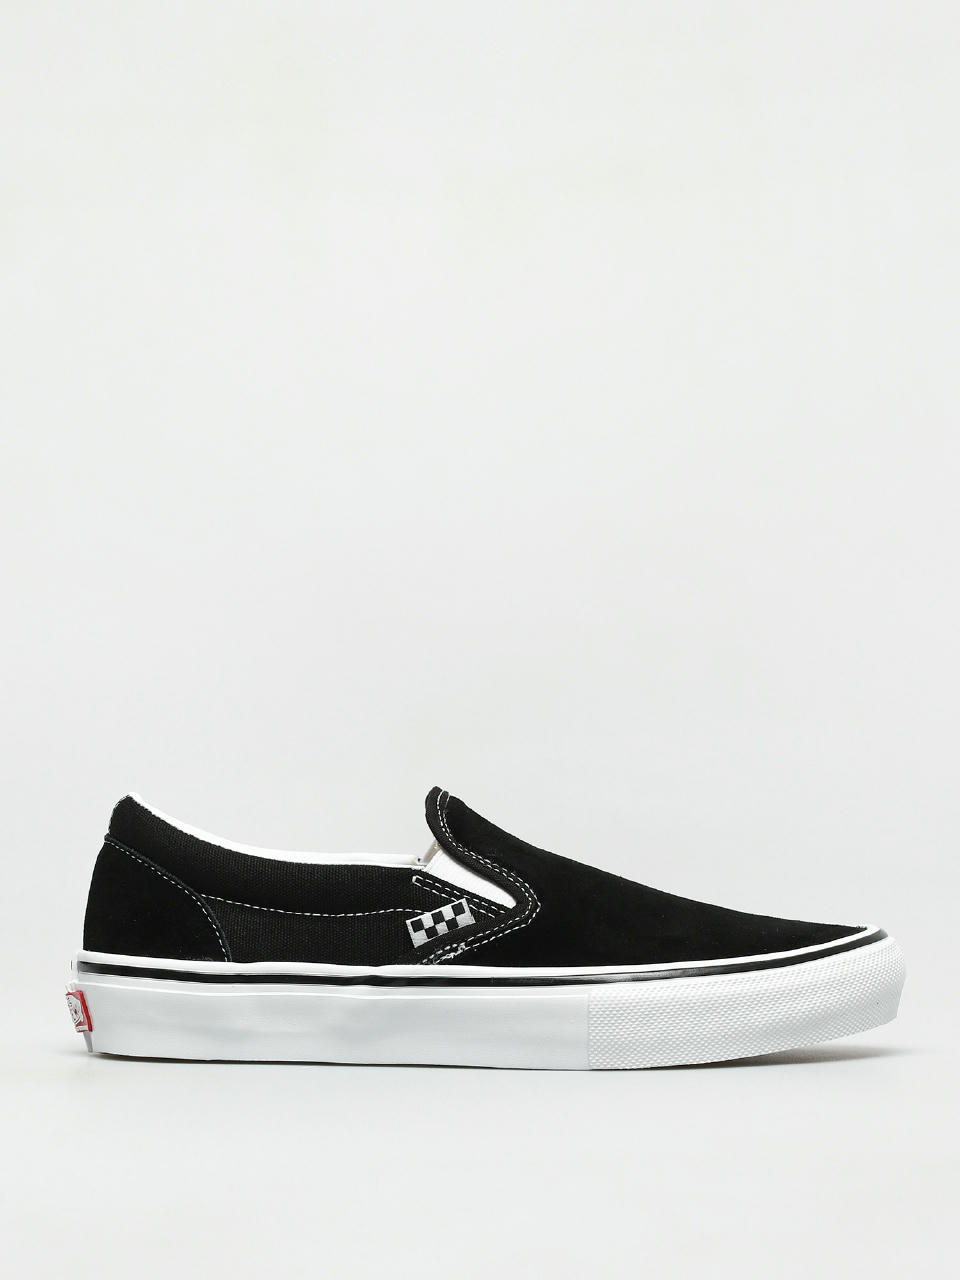 Vans Slip On Shoes (black/white)